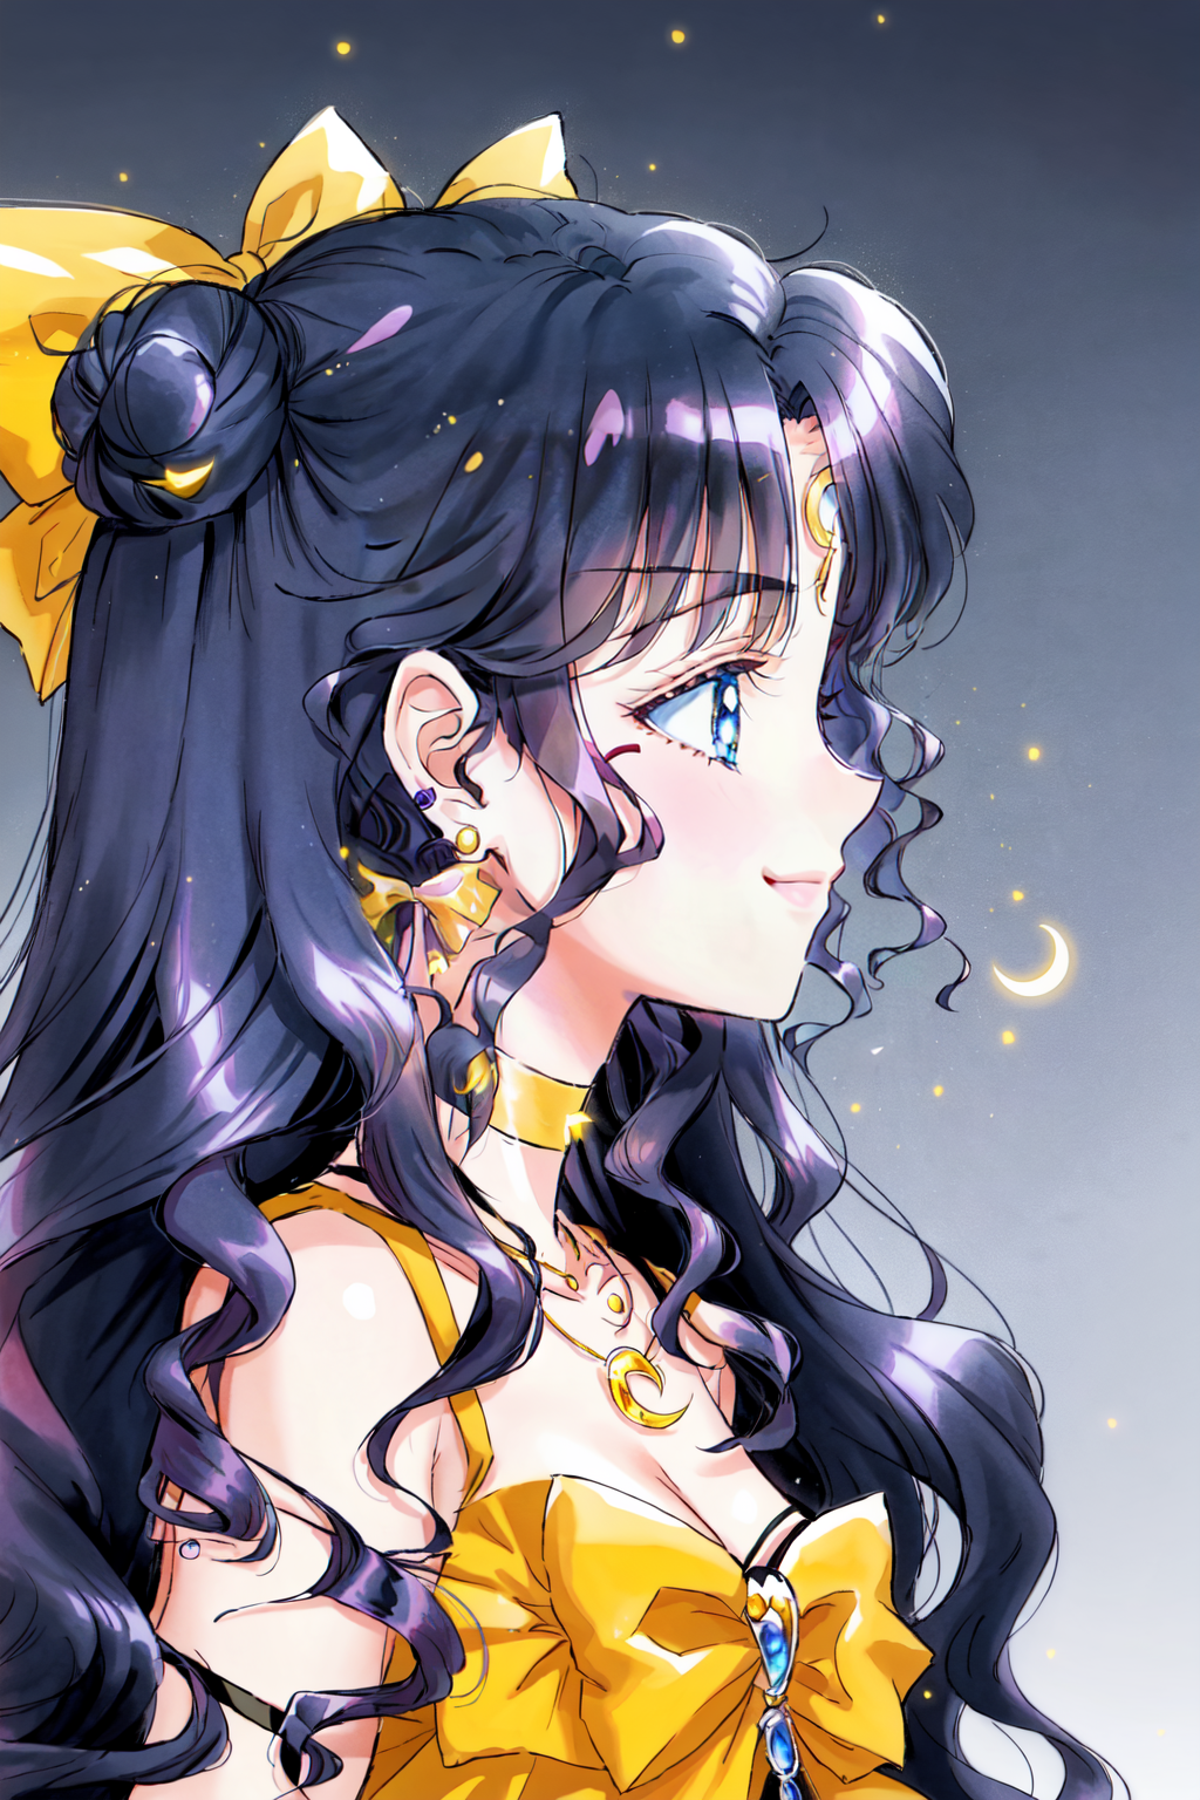 Naoko Takeuchi Art style (Manga) image by duskfallcrew